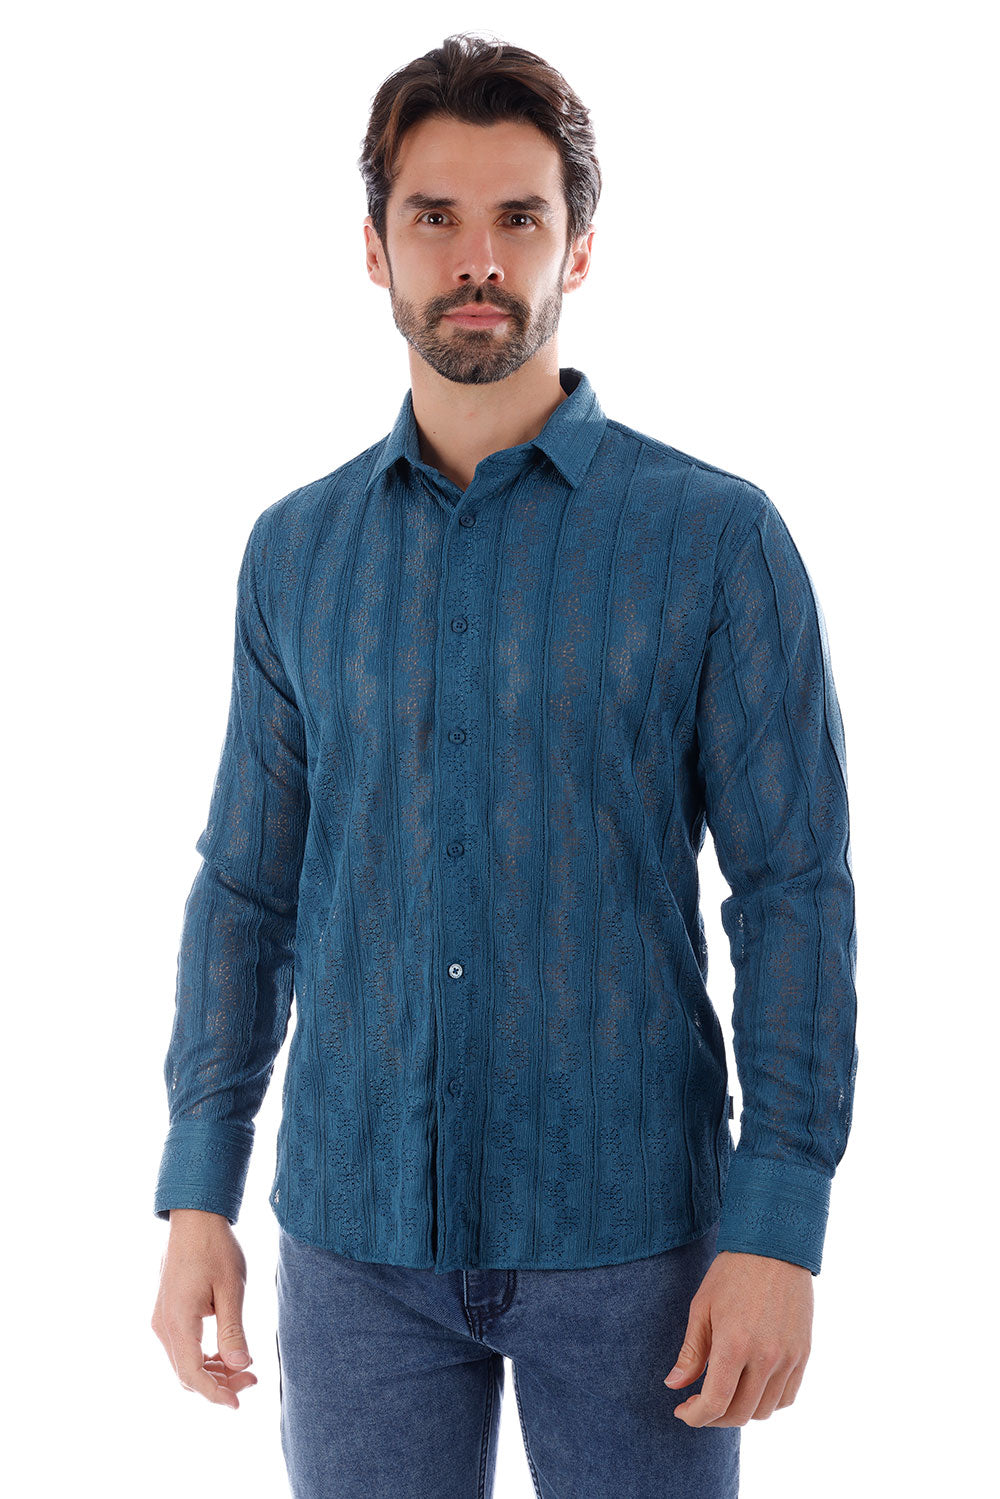 BARABAS Men's Floral Knitted Button Down Long Sleeve Shirt 4B44 Cobalt